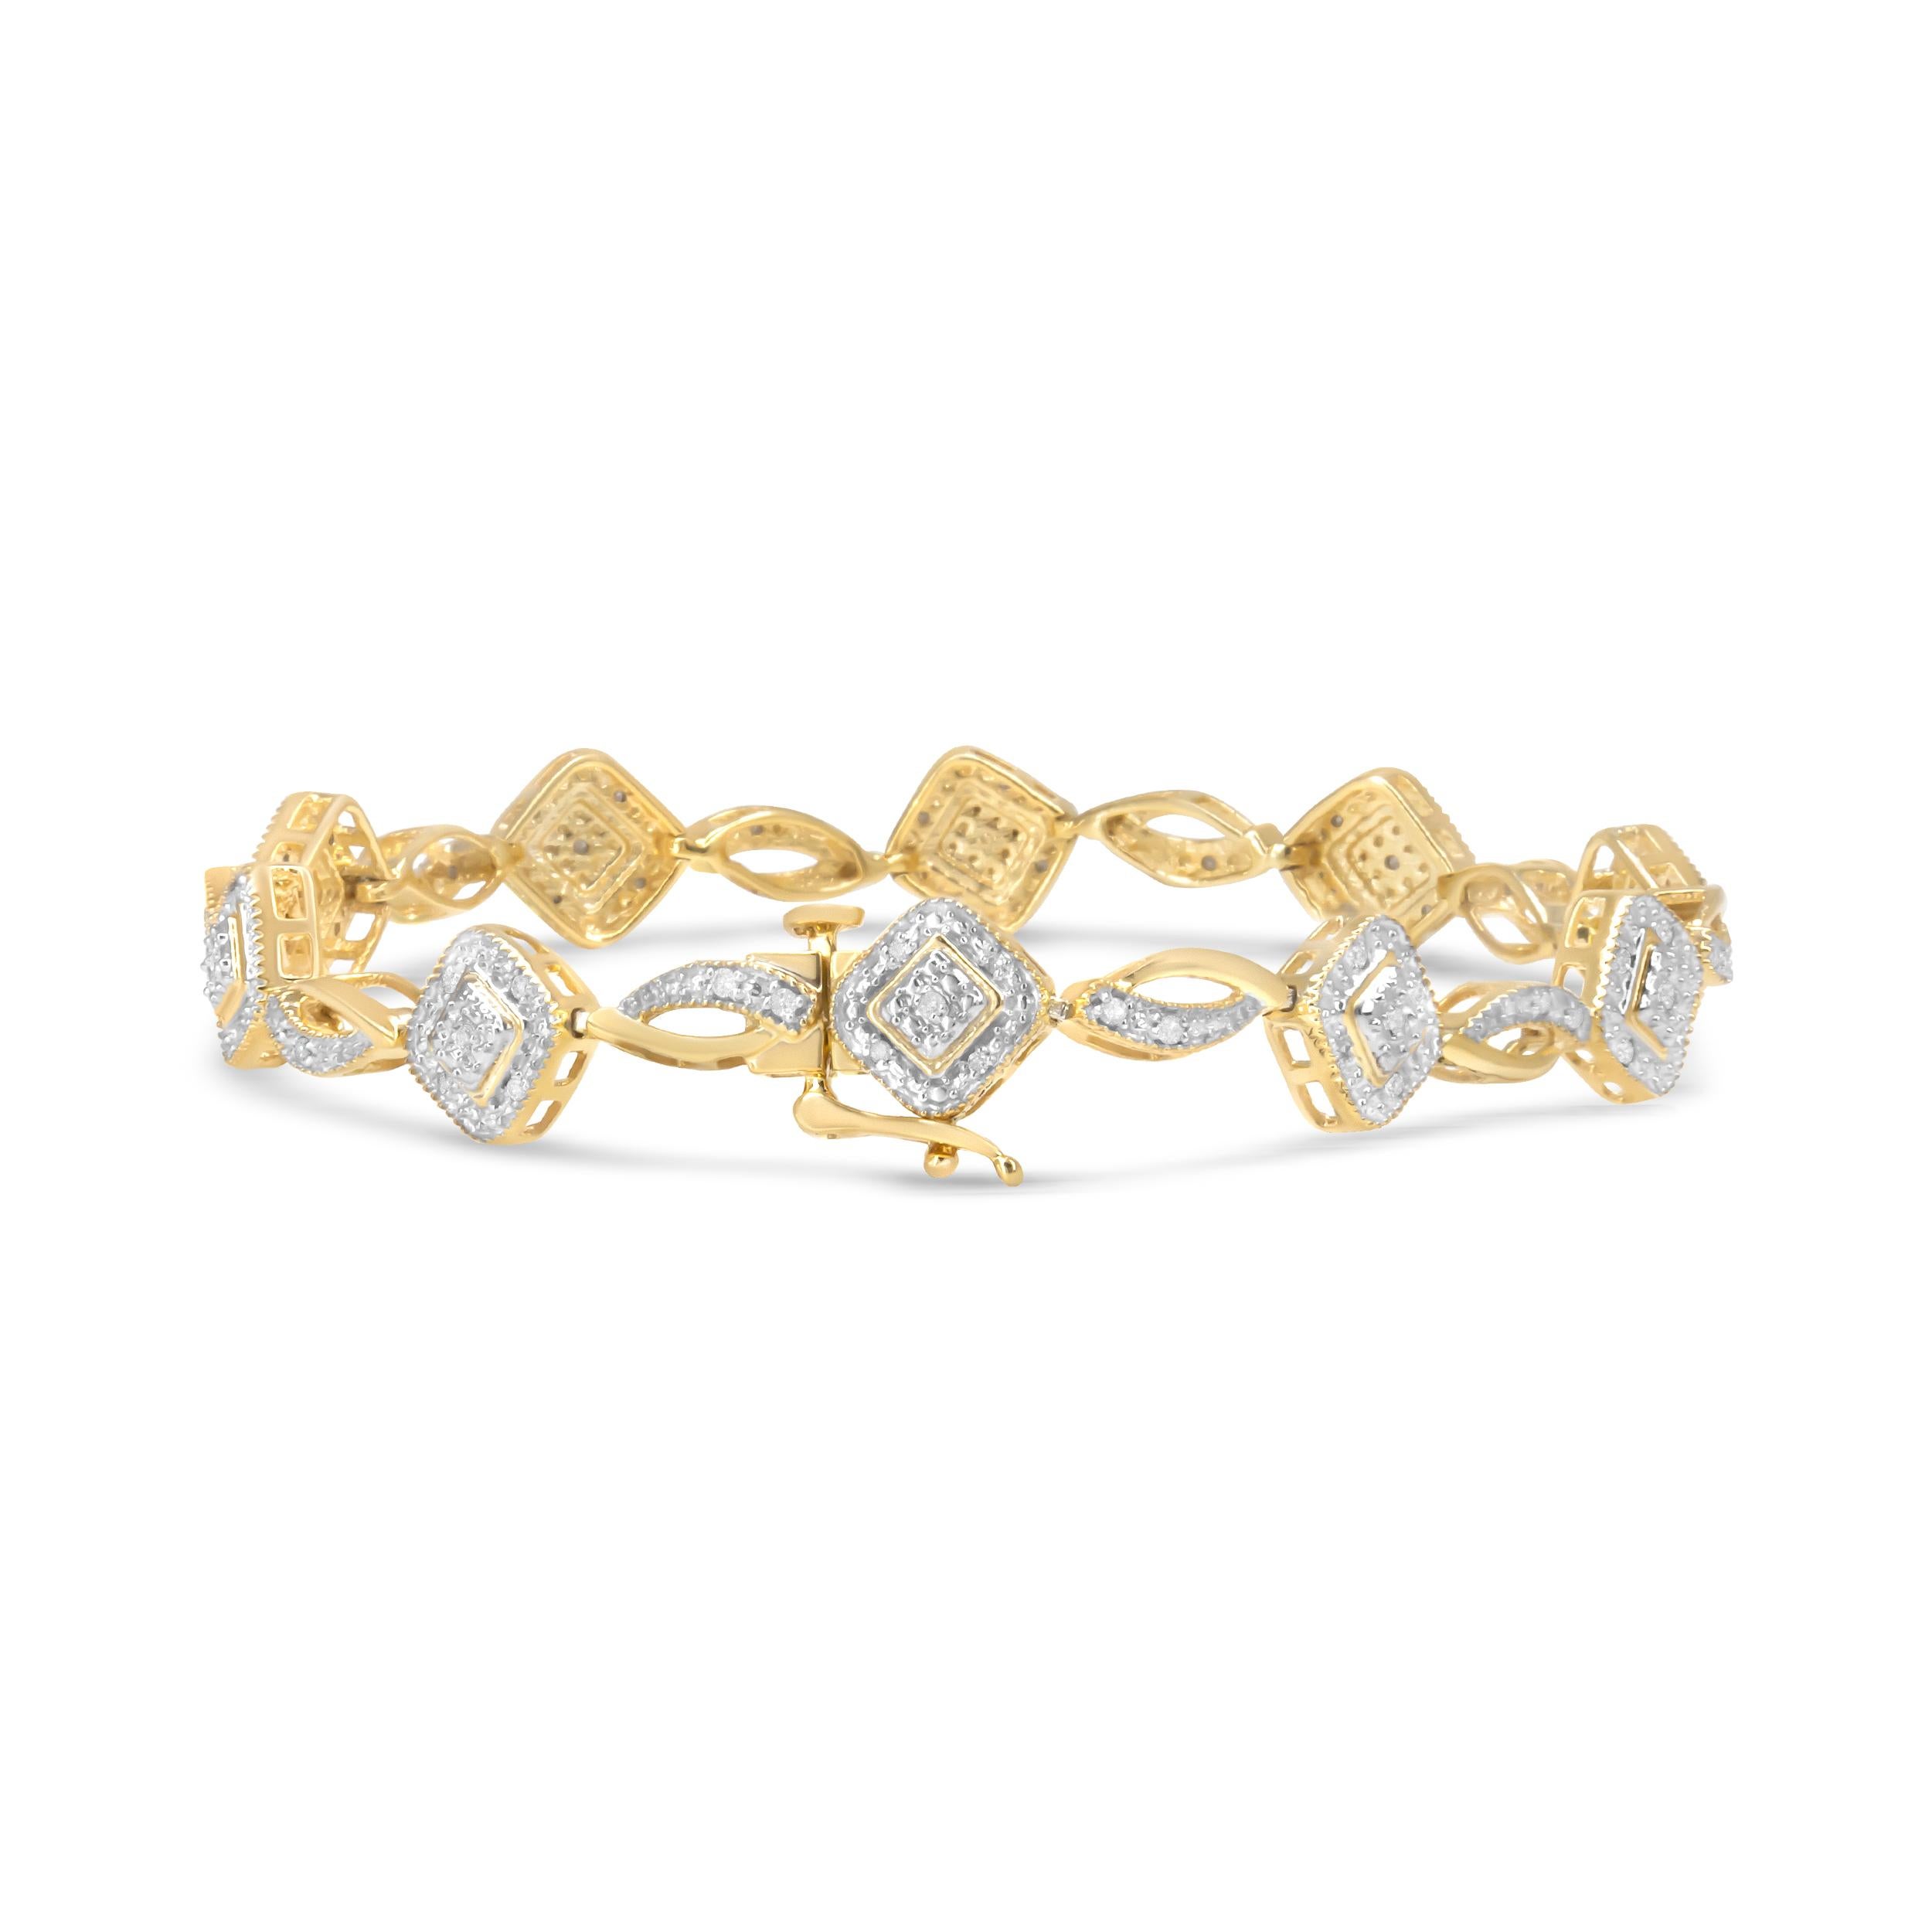 Un design moderne avec une touche art déco, ce remarquable bracelet à maillons en argent est recouvert de l'or jaune 10k le plus luxueux. Les maillons en or de forme unique sont sertis d'un diamant naturel de taille ronde dans une monture classique.